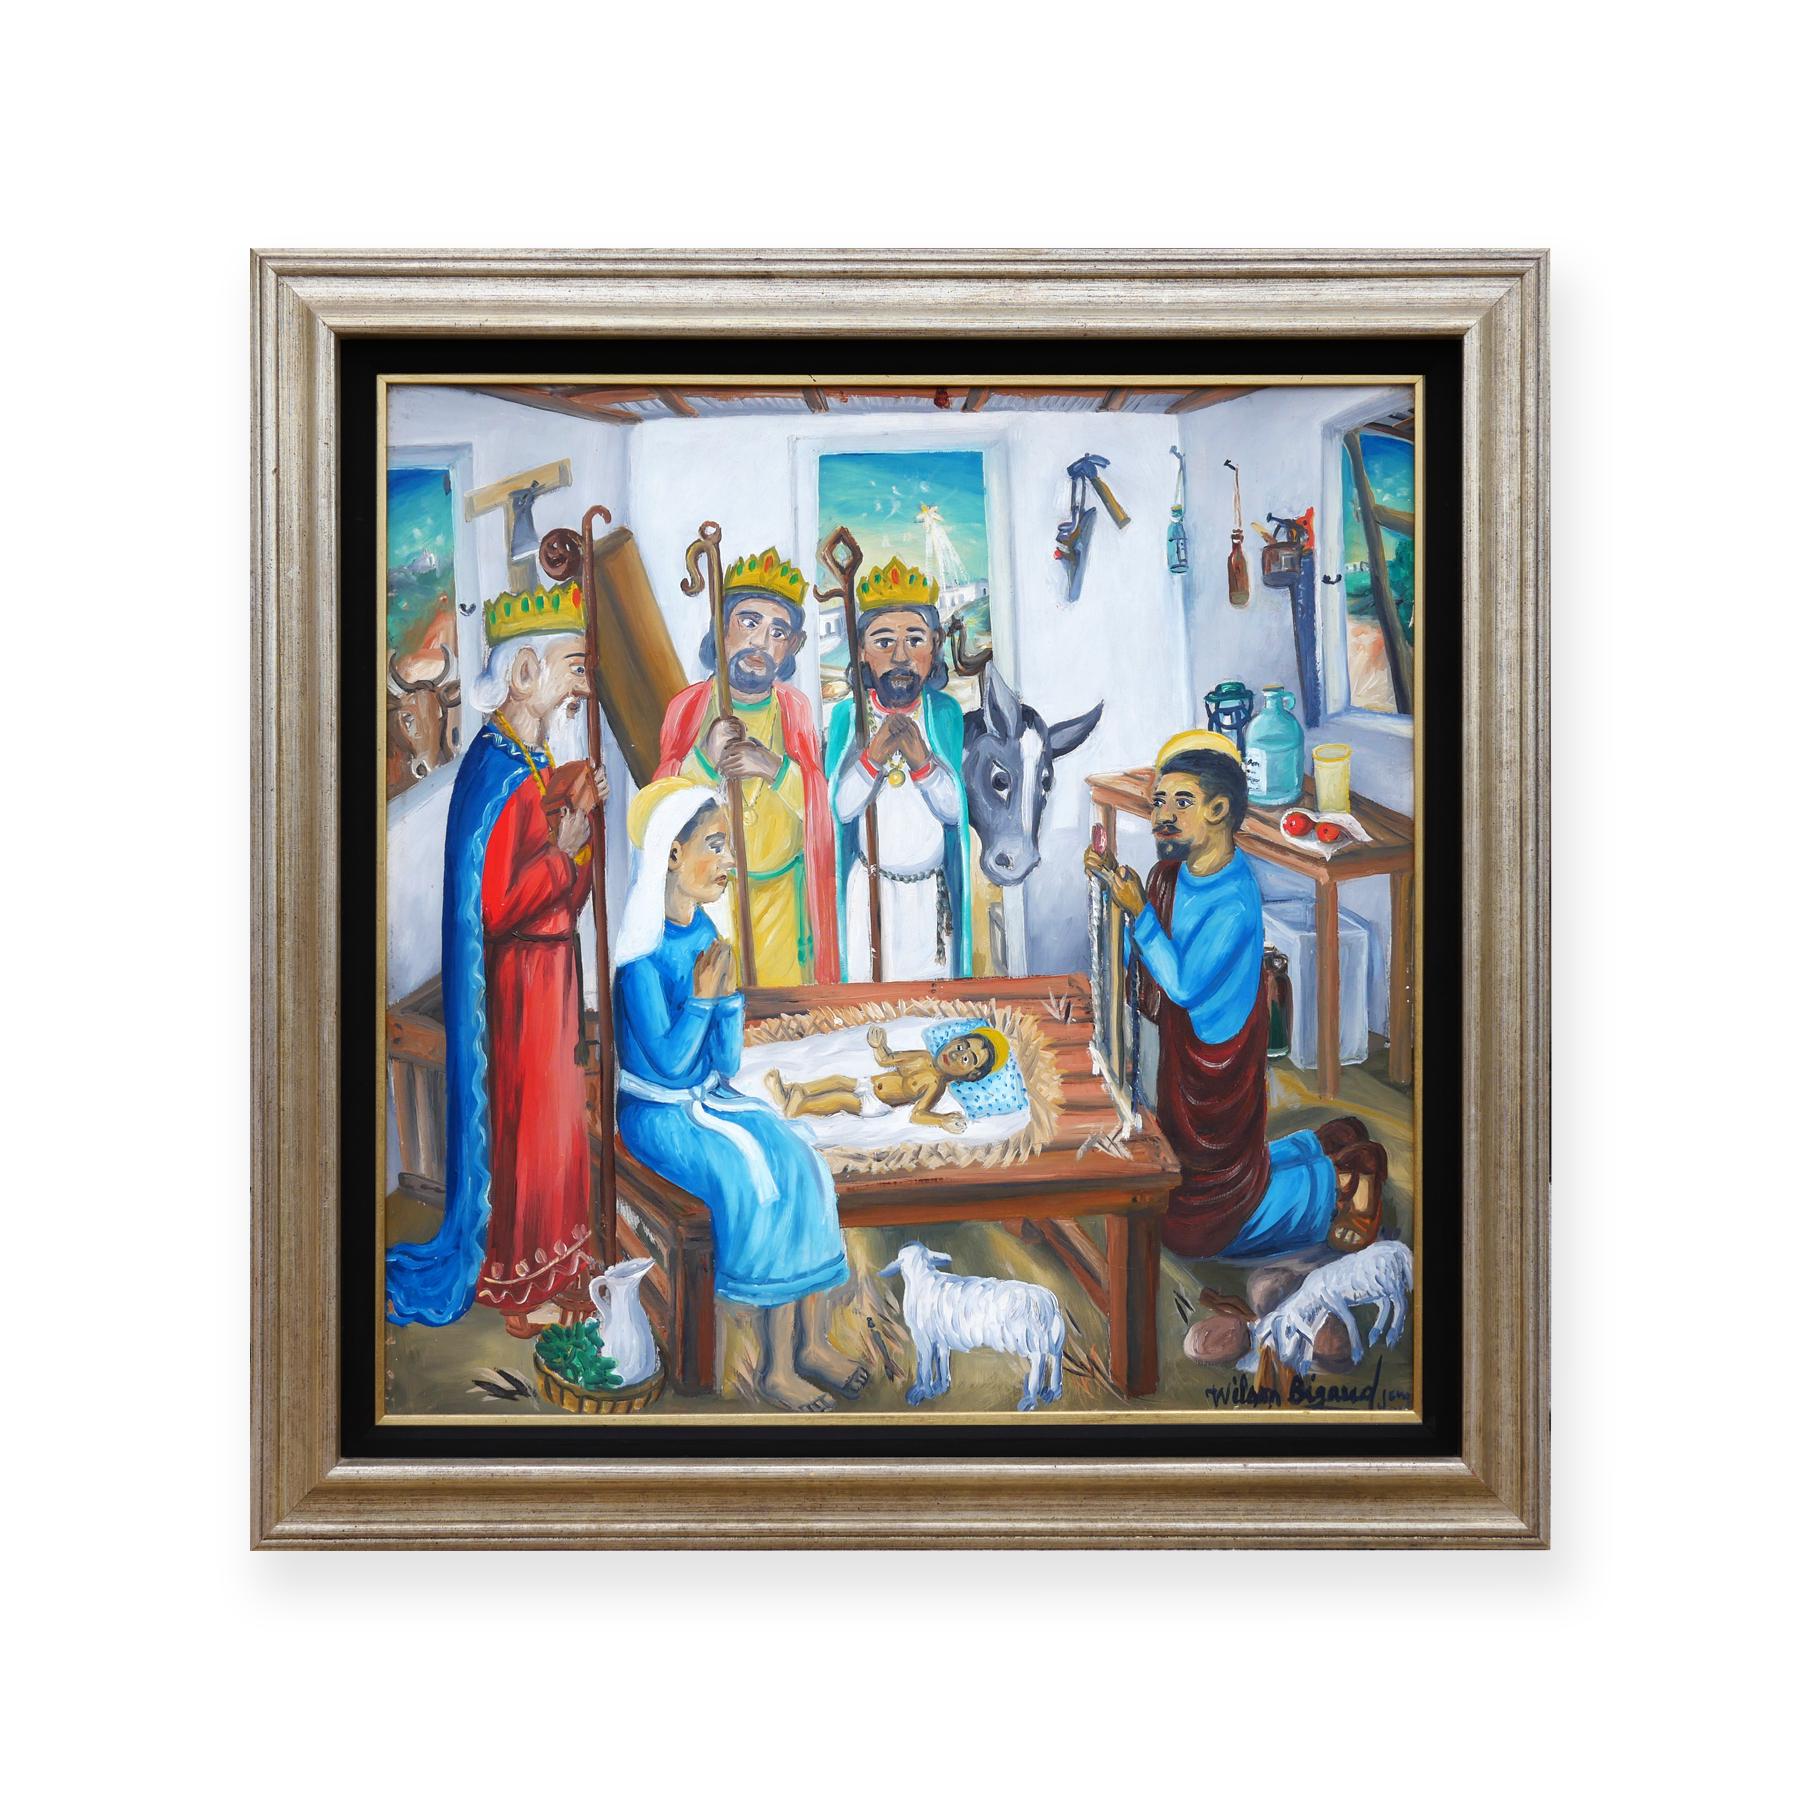 Peinture haïtienne moderne colorée abstraite figurative représentant une scène de nativité chrétienne - Painting de Wilson Bigaud